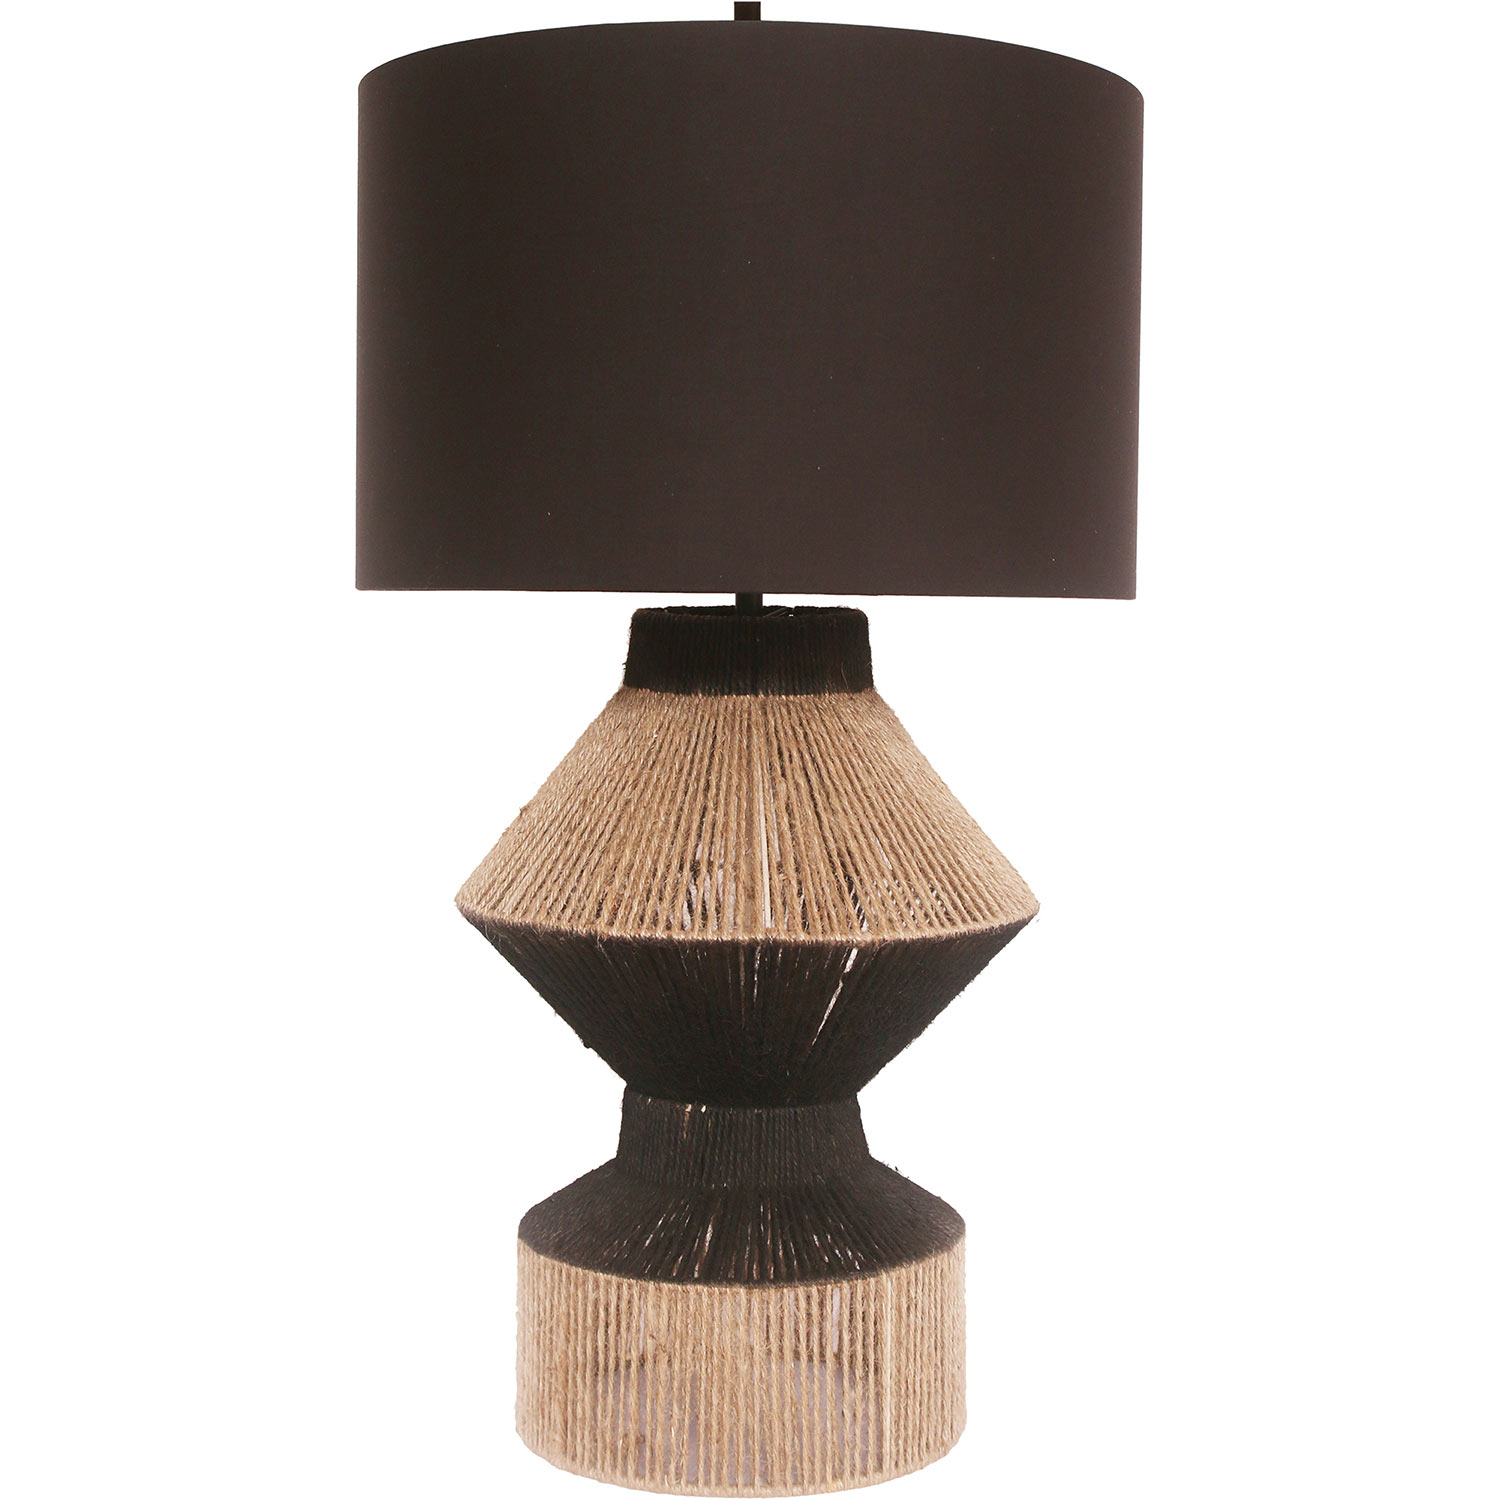 Ren-Wil Dano Table Lamp - Natural/Black